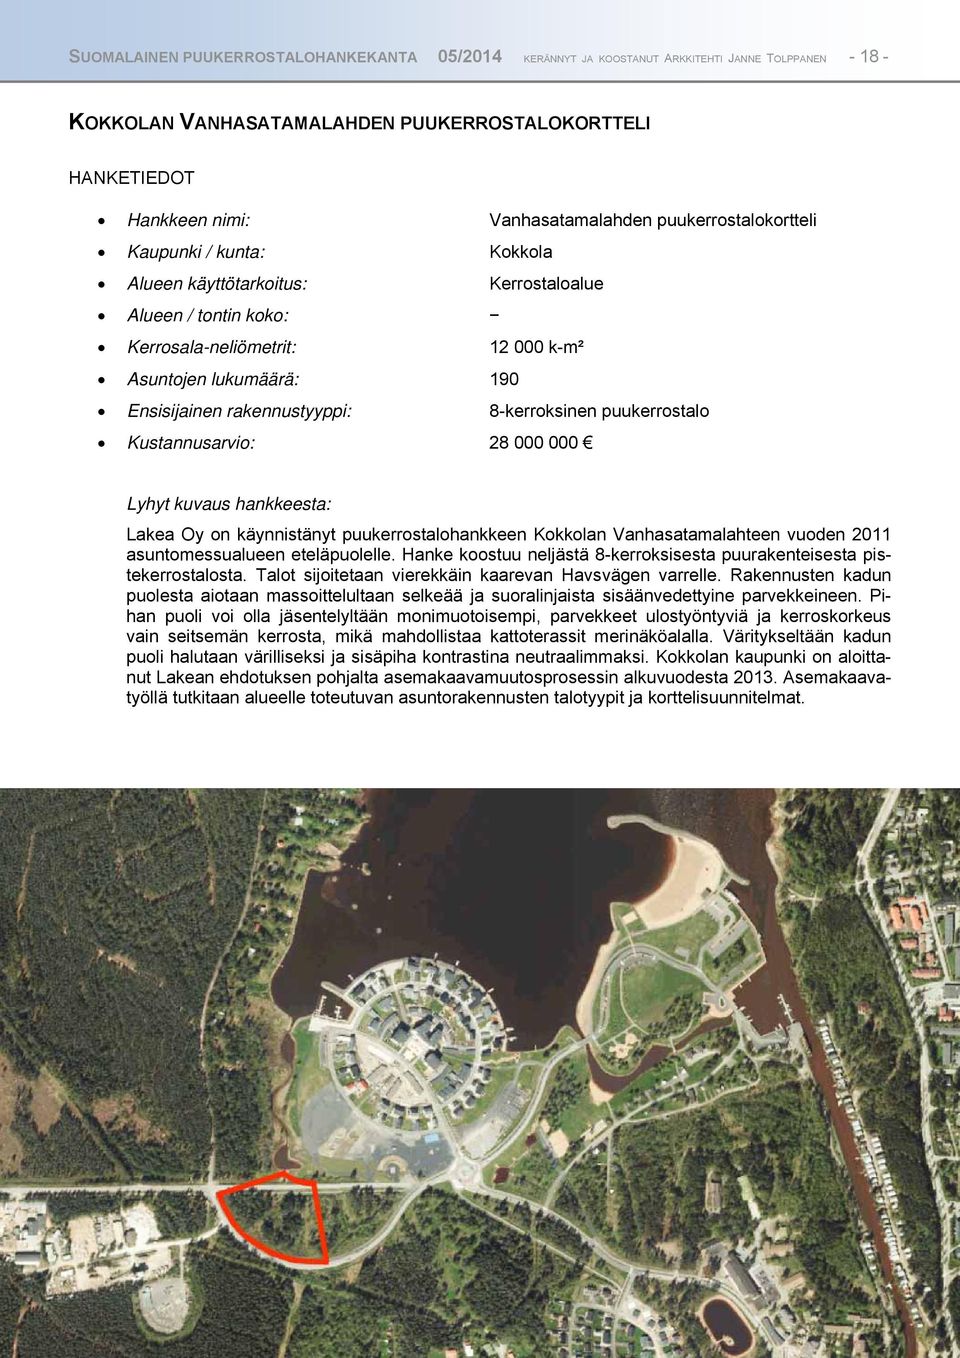 8-kerroksinen puukerrostalo Kustannusarvio: 28 000 000 Lyhyt kuvaus hankkeesta: Lakea Oy on käynnistänyt puukerrostalohankkeen Kokkolan Vanhasatamalahteen vuoden 2011 asuntomessualueen eteläpuolelle.